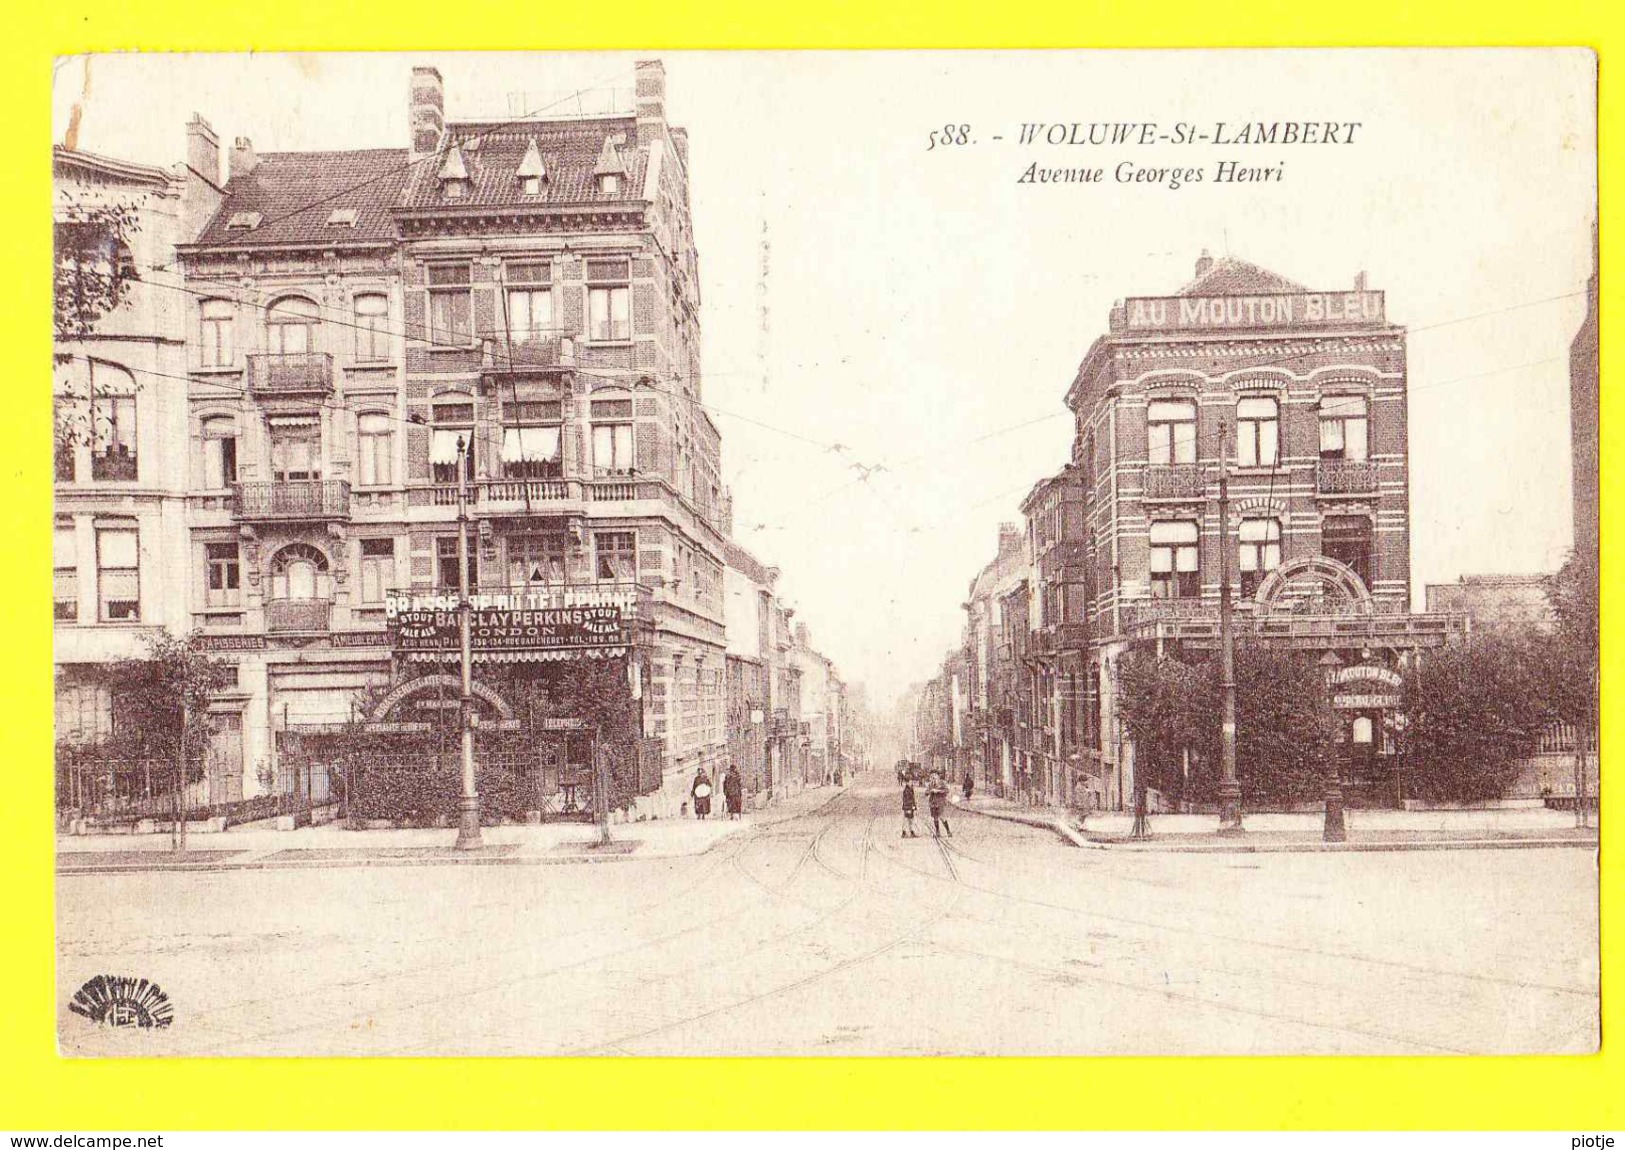 * Sint Lambrechts Woluwe Saint Lambert (Brussel - Bruxelles) * (Henri Georges, Nr 588) Avenue Georges Henri, Brasserie - Woluwe-St-Lambert - St-Lambrechts-Woluwe